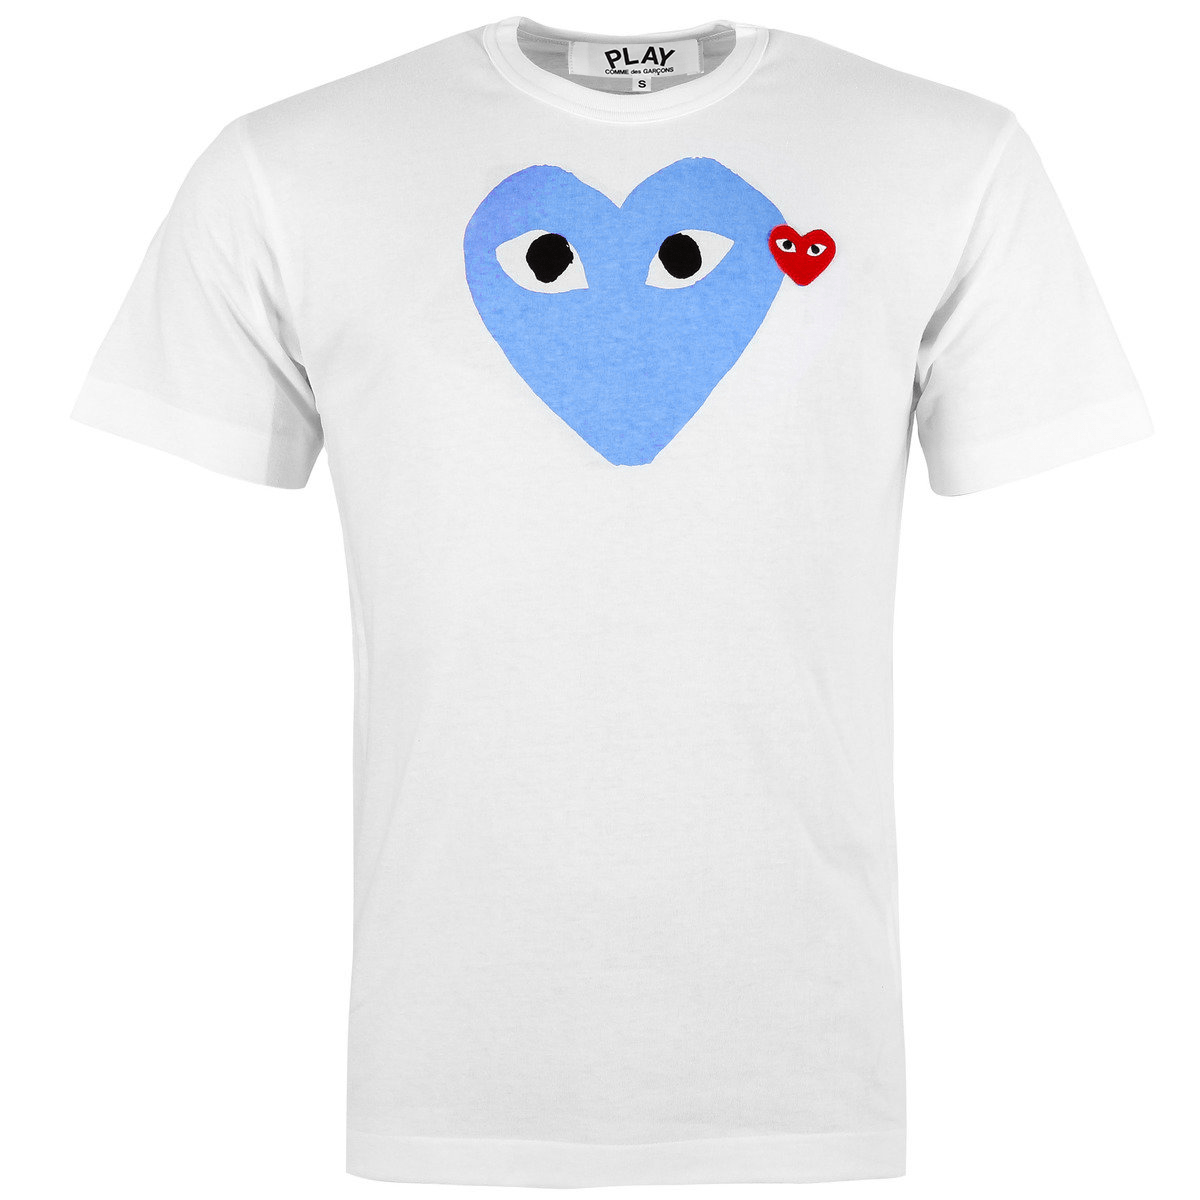 T106 Blue Heart T-shirt Xxl Light Blue